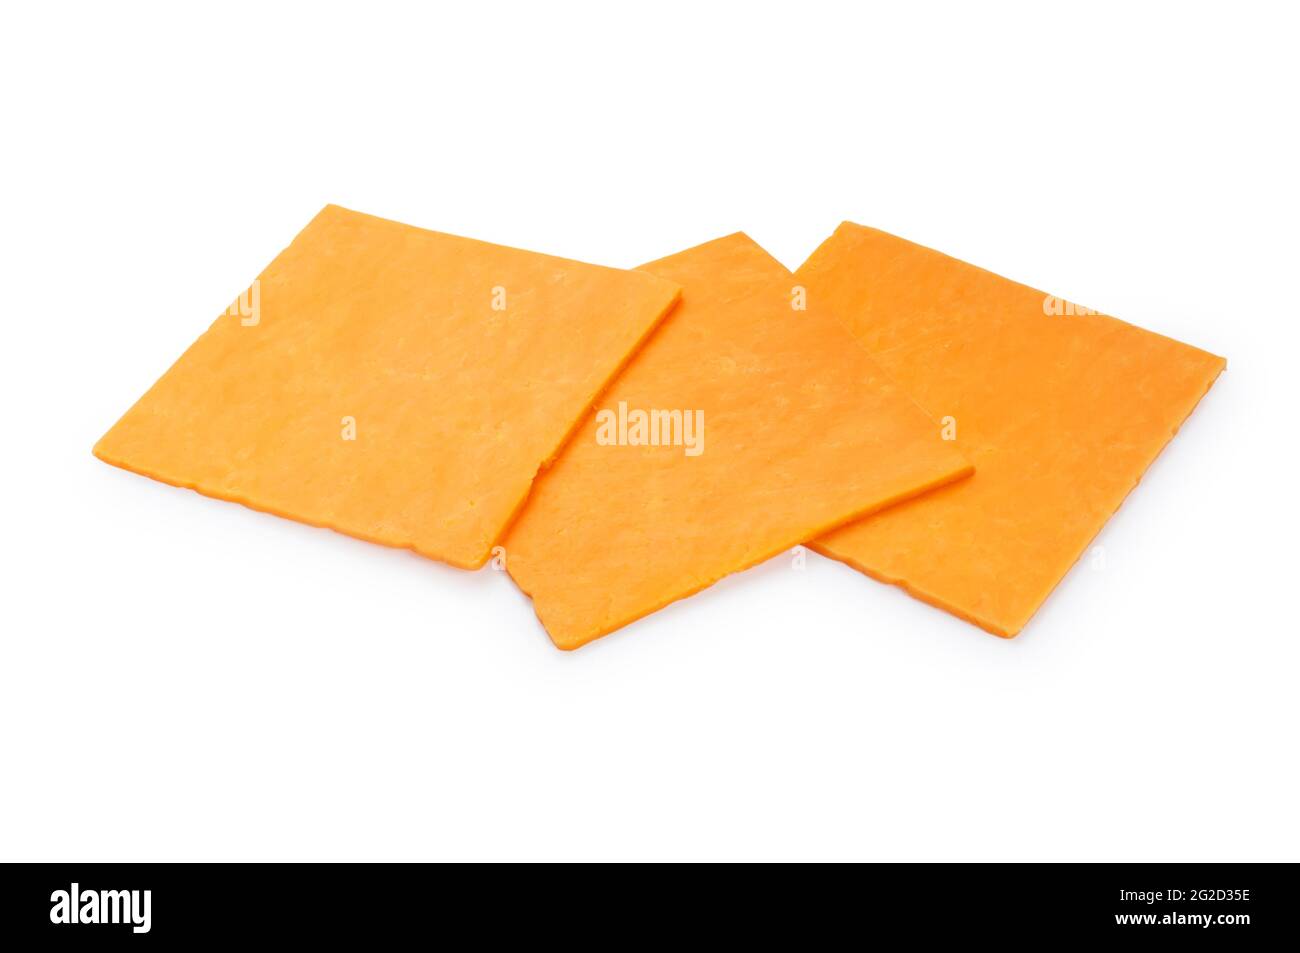 Photo de studio de fromage Red Leicester finement tranché, en forme de carré, découpé sur fond blanc - John Gollop Banque D'Images